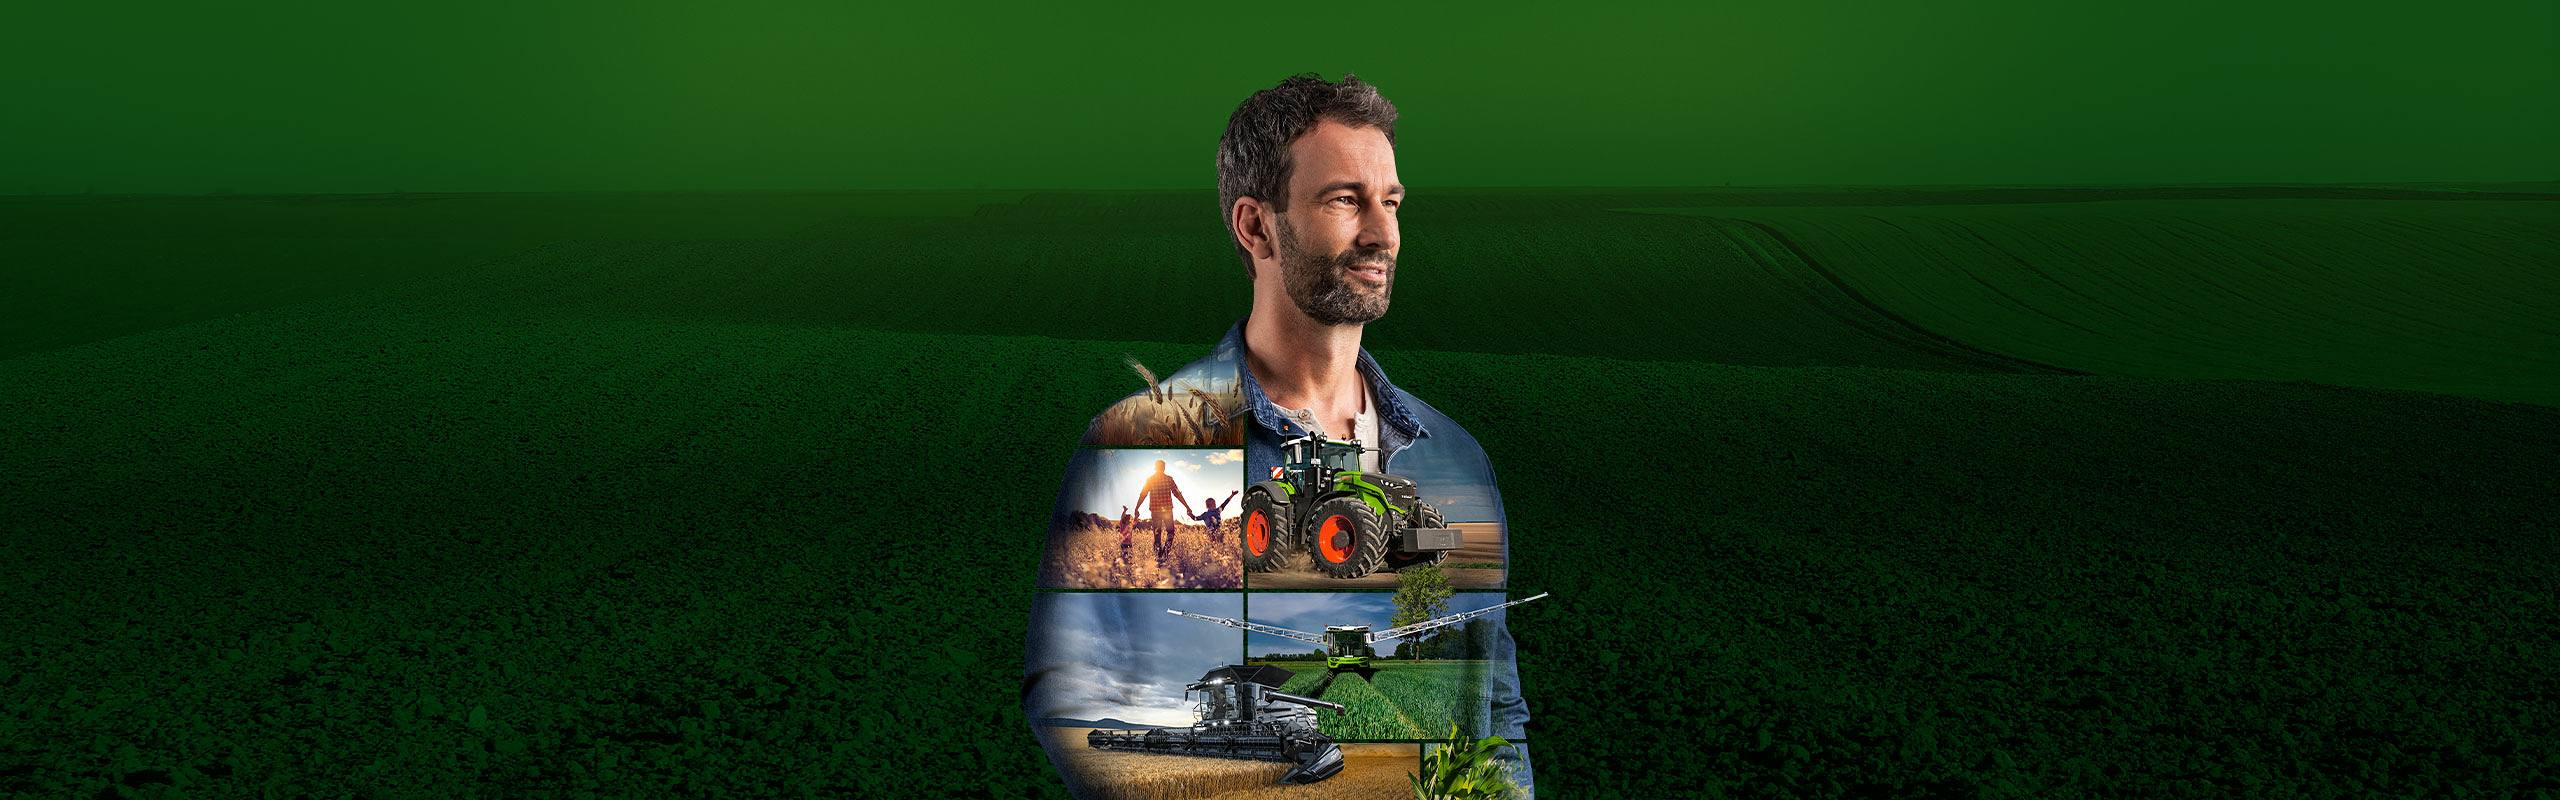 En bonde står framför en grön bakgrund och ser förhoppningsfull mot framtiden. På hans överdel är Fendt-produkter avbildade.